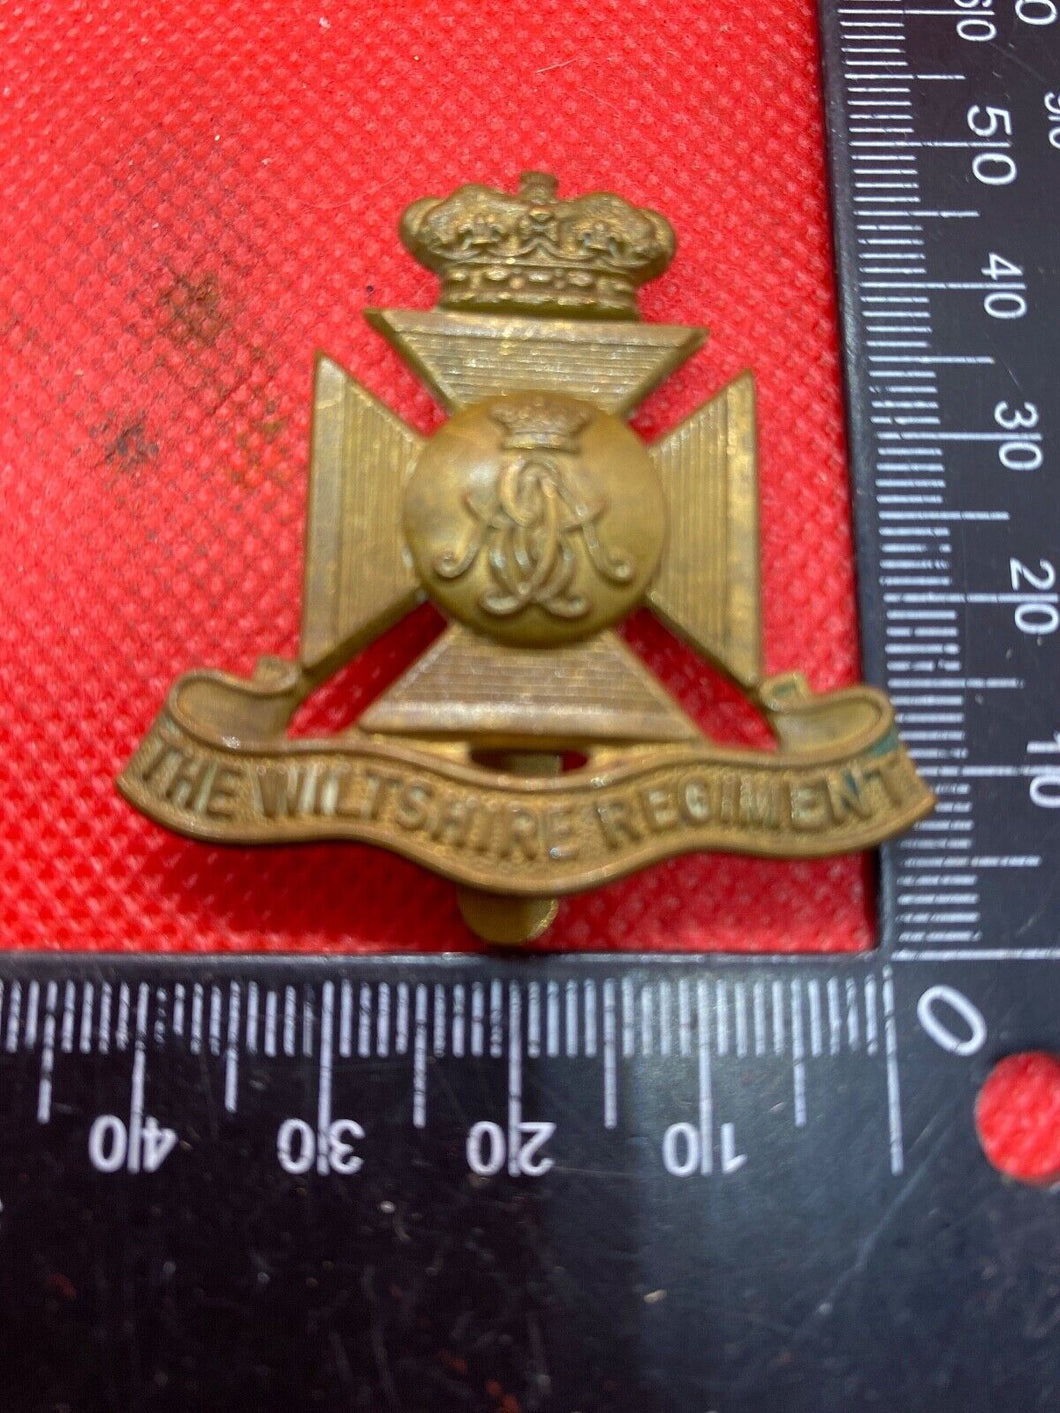 The Wiltshire Regiment Victorian Crown Cap Badge